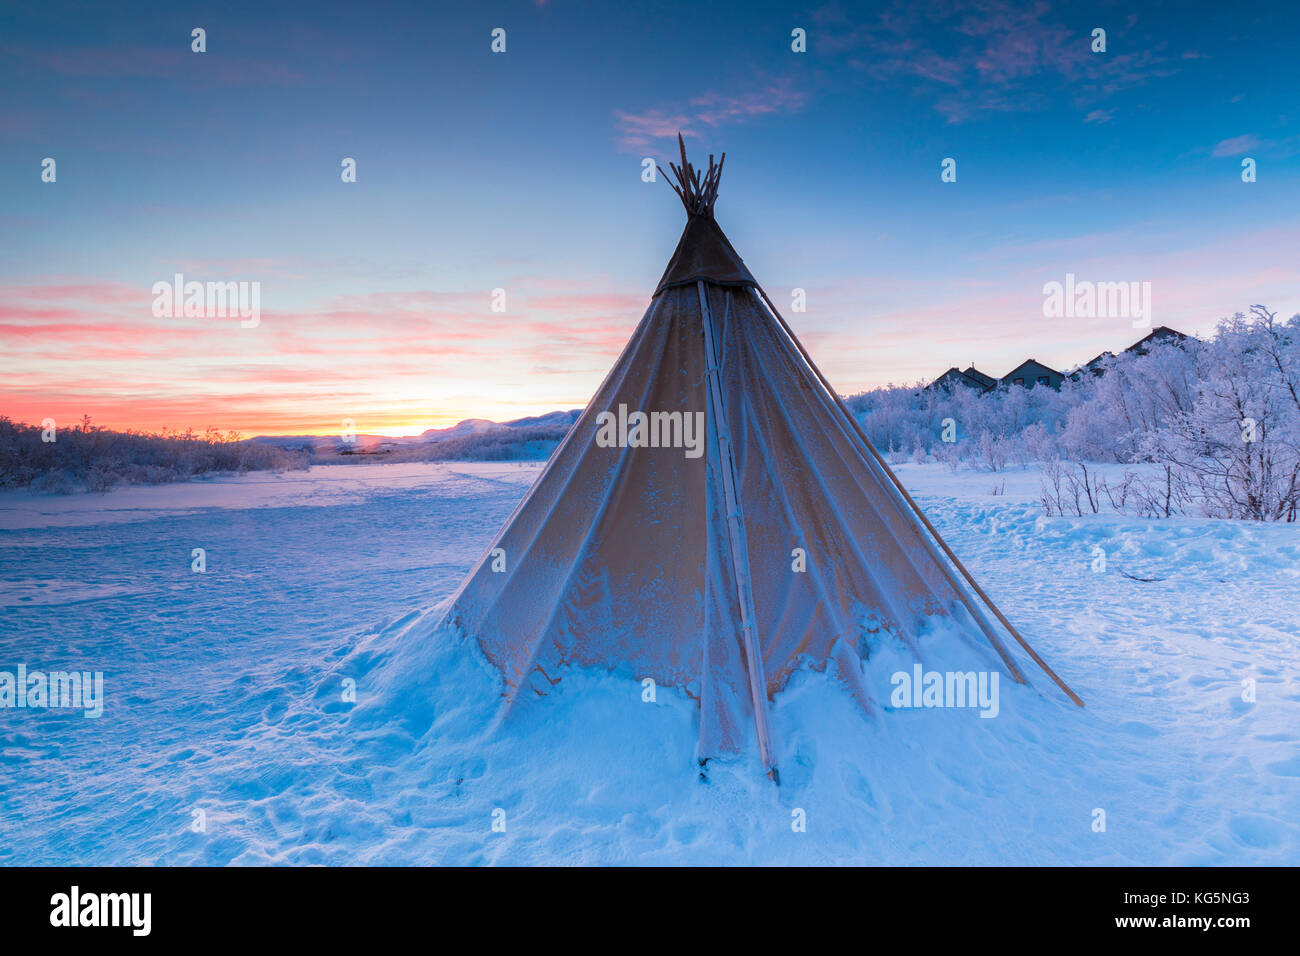 Ciel rose au lever du soleil sur la tente sami isolés dans la neige, abisko, municipalité du comté de Norrbotten, Kiruna, Lapland, Sweden Banque D'Images